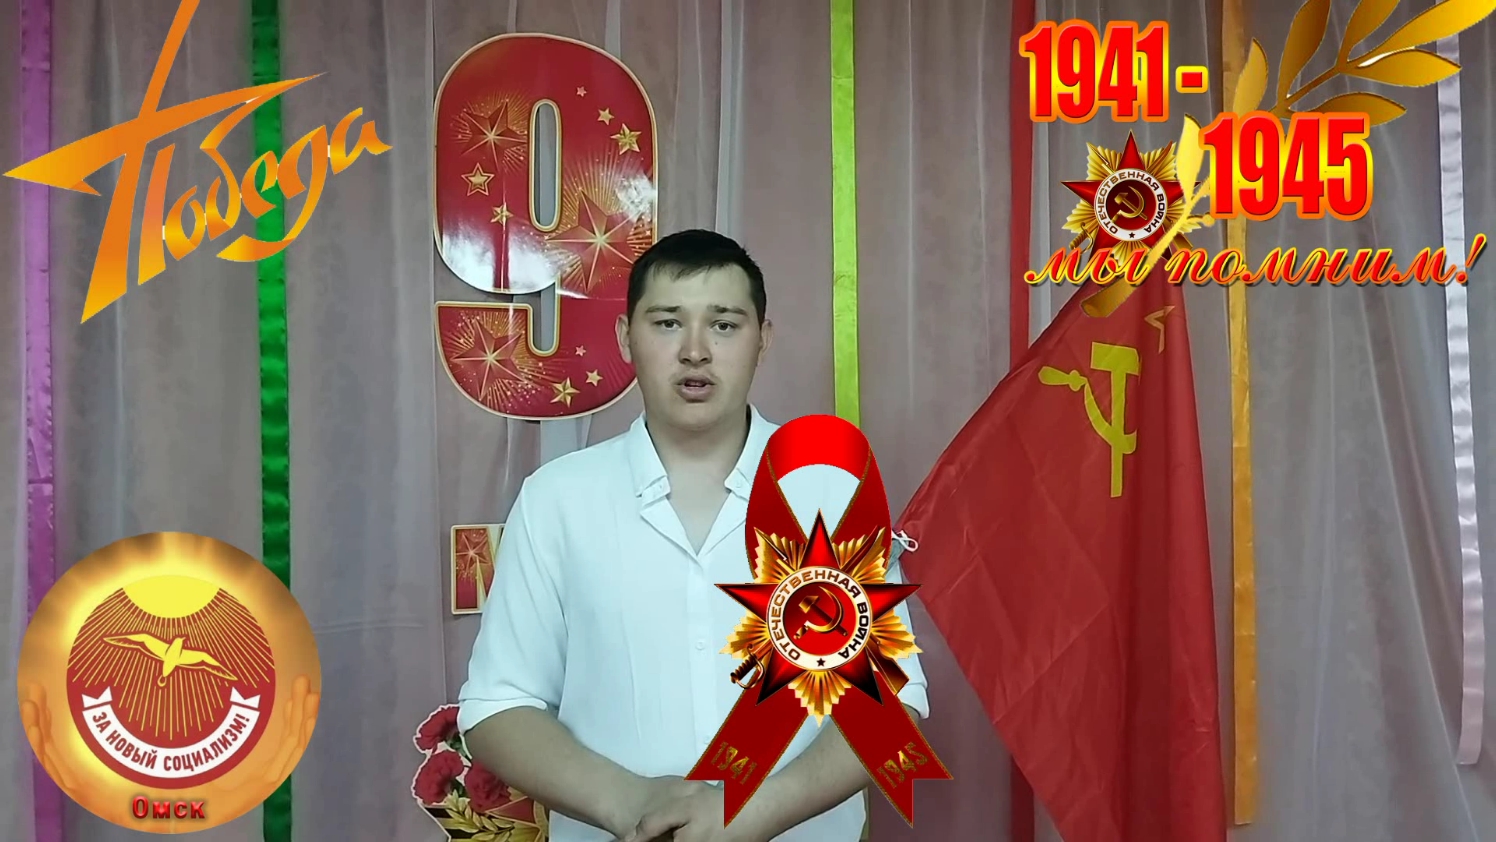 В День ПОБЕДЫ! Верховный Главнокомандующий СССР 9 мая поздравляет! Омск "За Новый Социализм"!